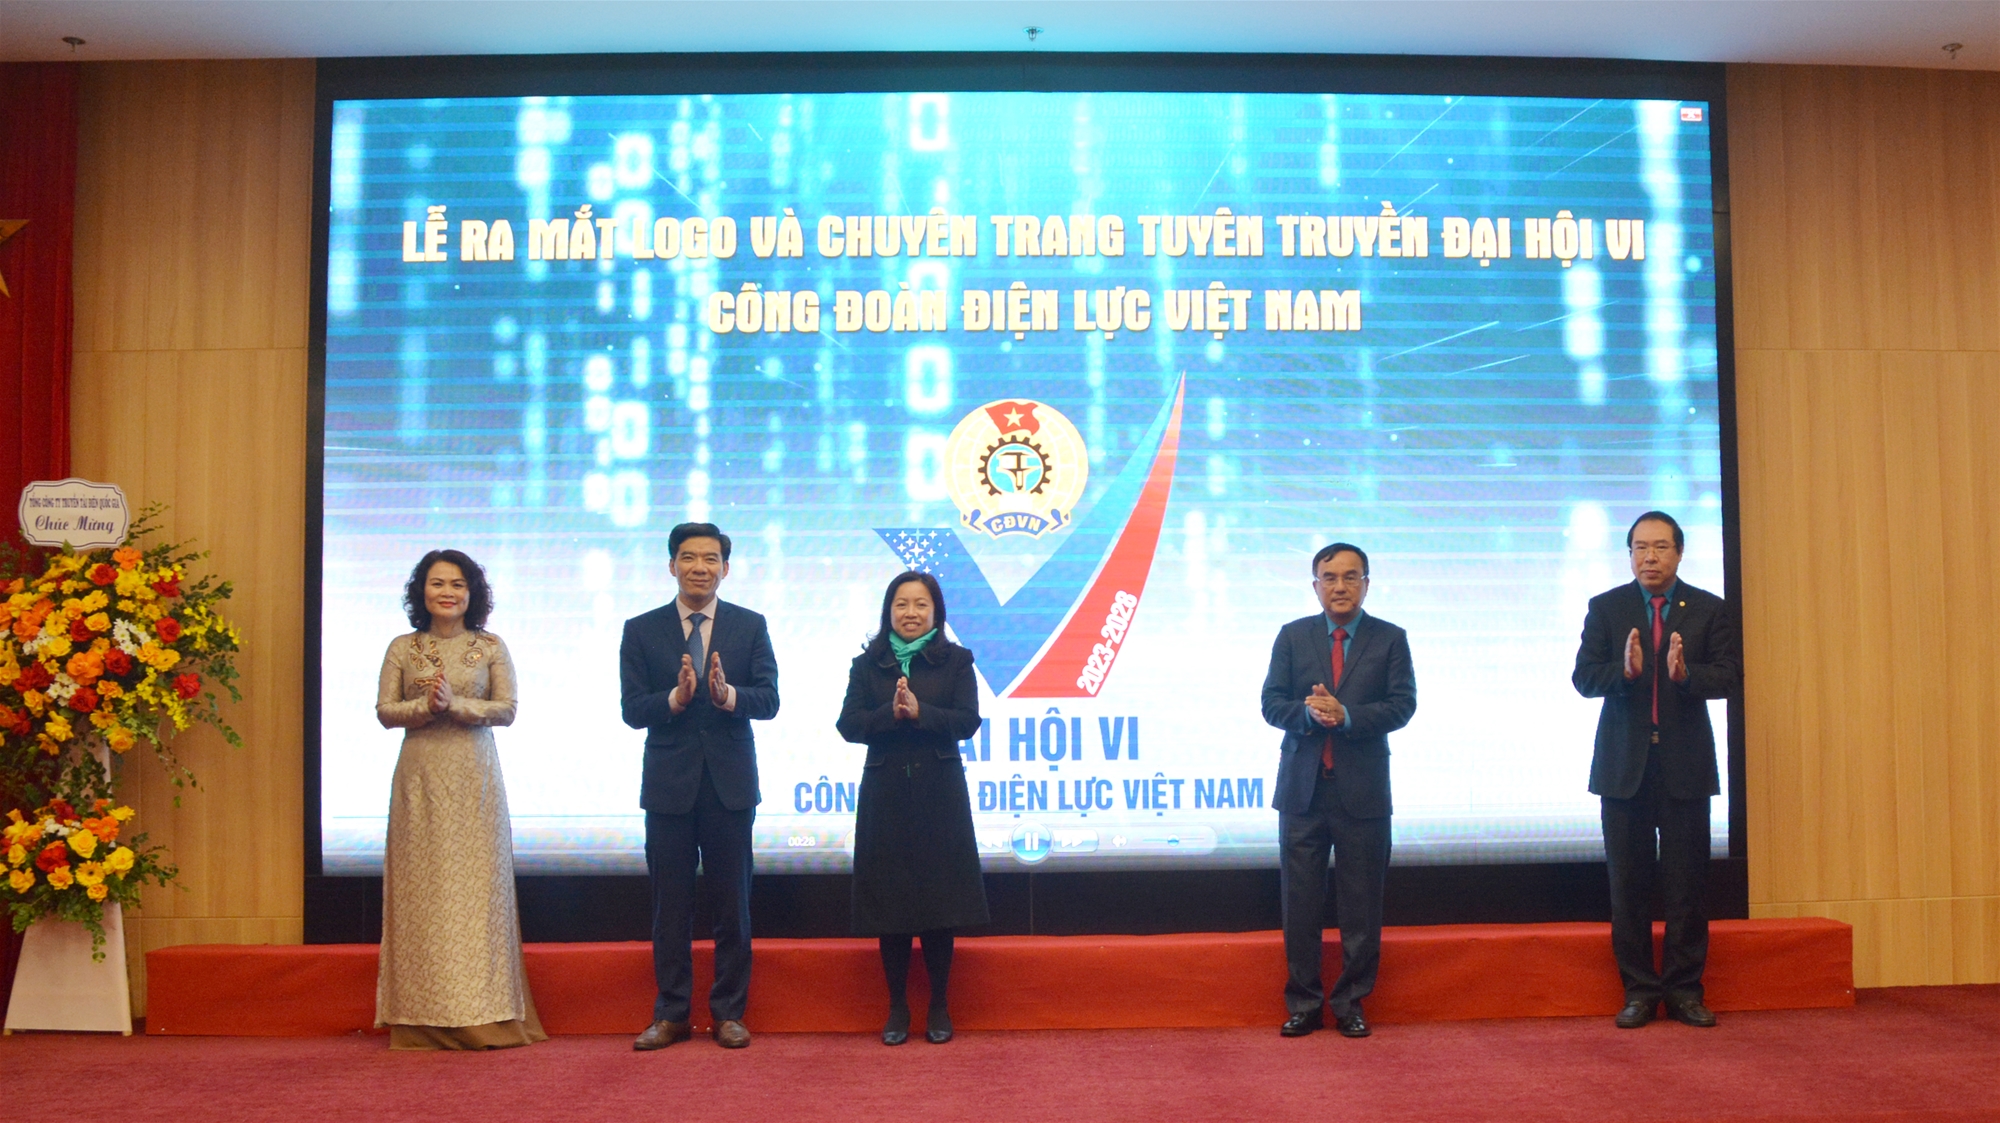 Công bố Logo Đại hội và ra mắt chuyên trang tuyên truyền Đại hội VI Công đoàn Điện lực Việt Nam